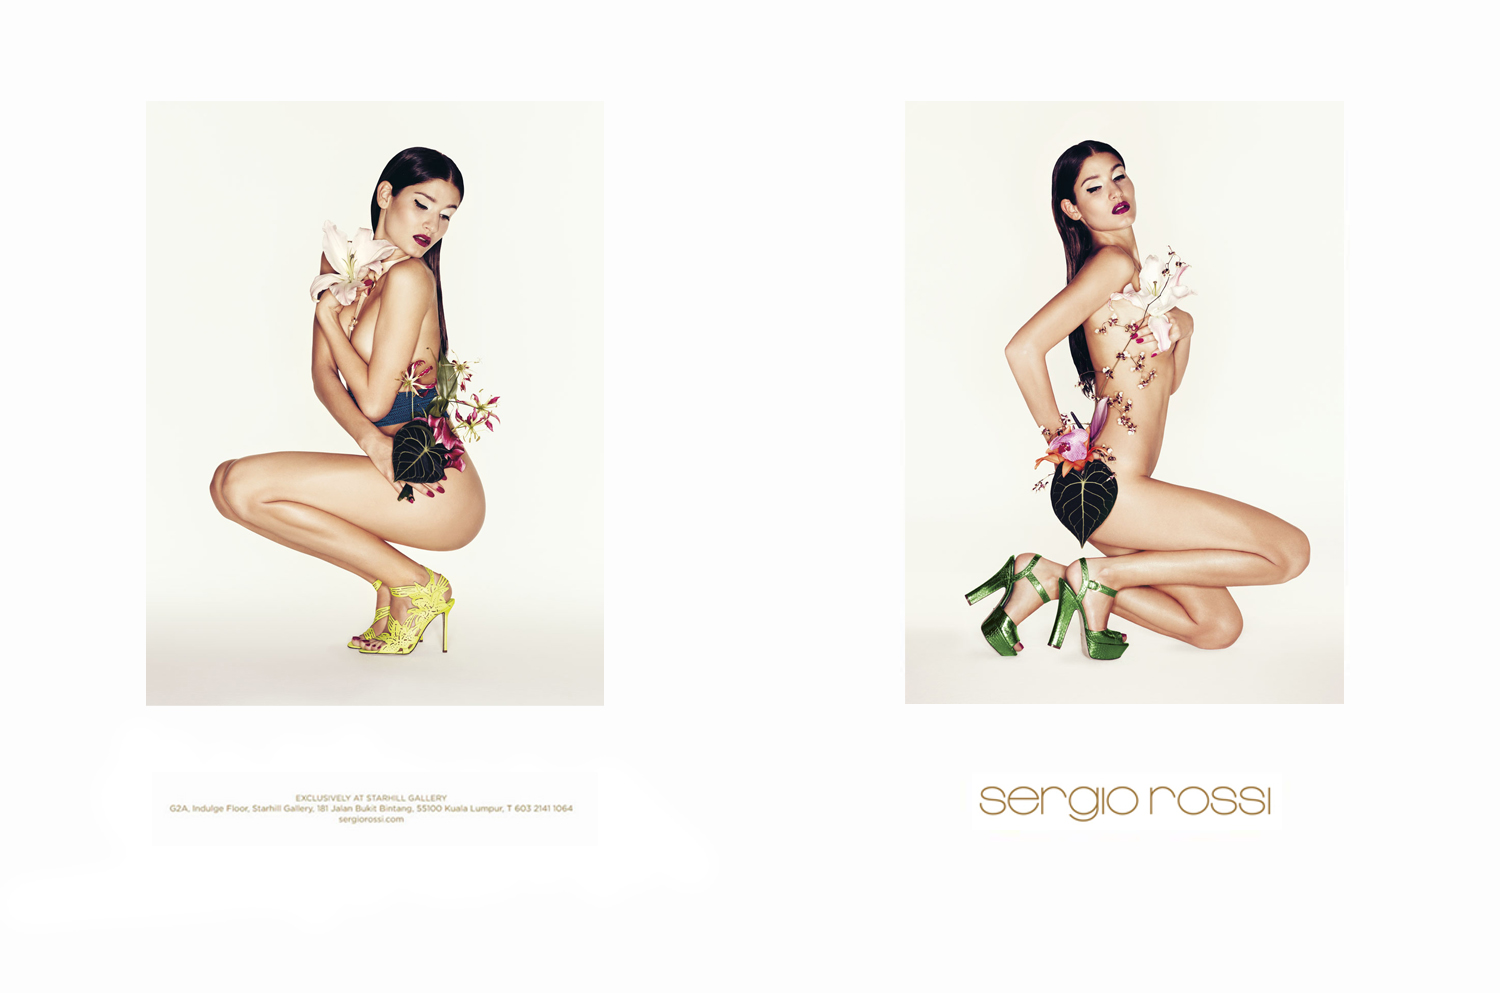 Sergio Rossi SS 2012 Campaign | Johan Sandberg | Sergio Rossi | Tanya Jones | Numerique Retouch Photo Retouching Studio